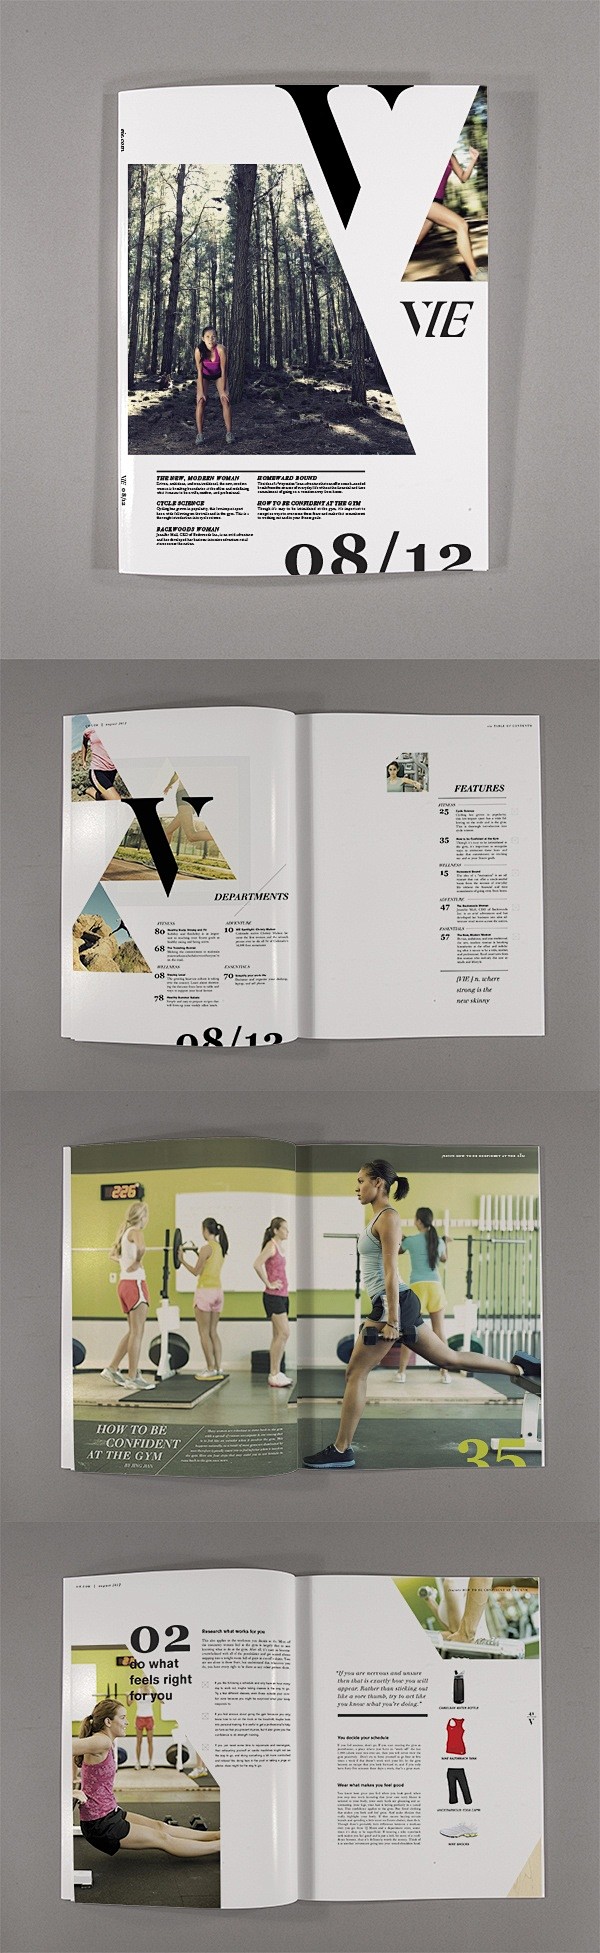 国外杂志创意版式设计欣赏(4) - 设计...